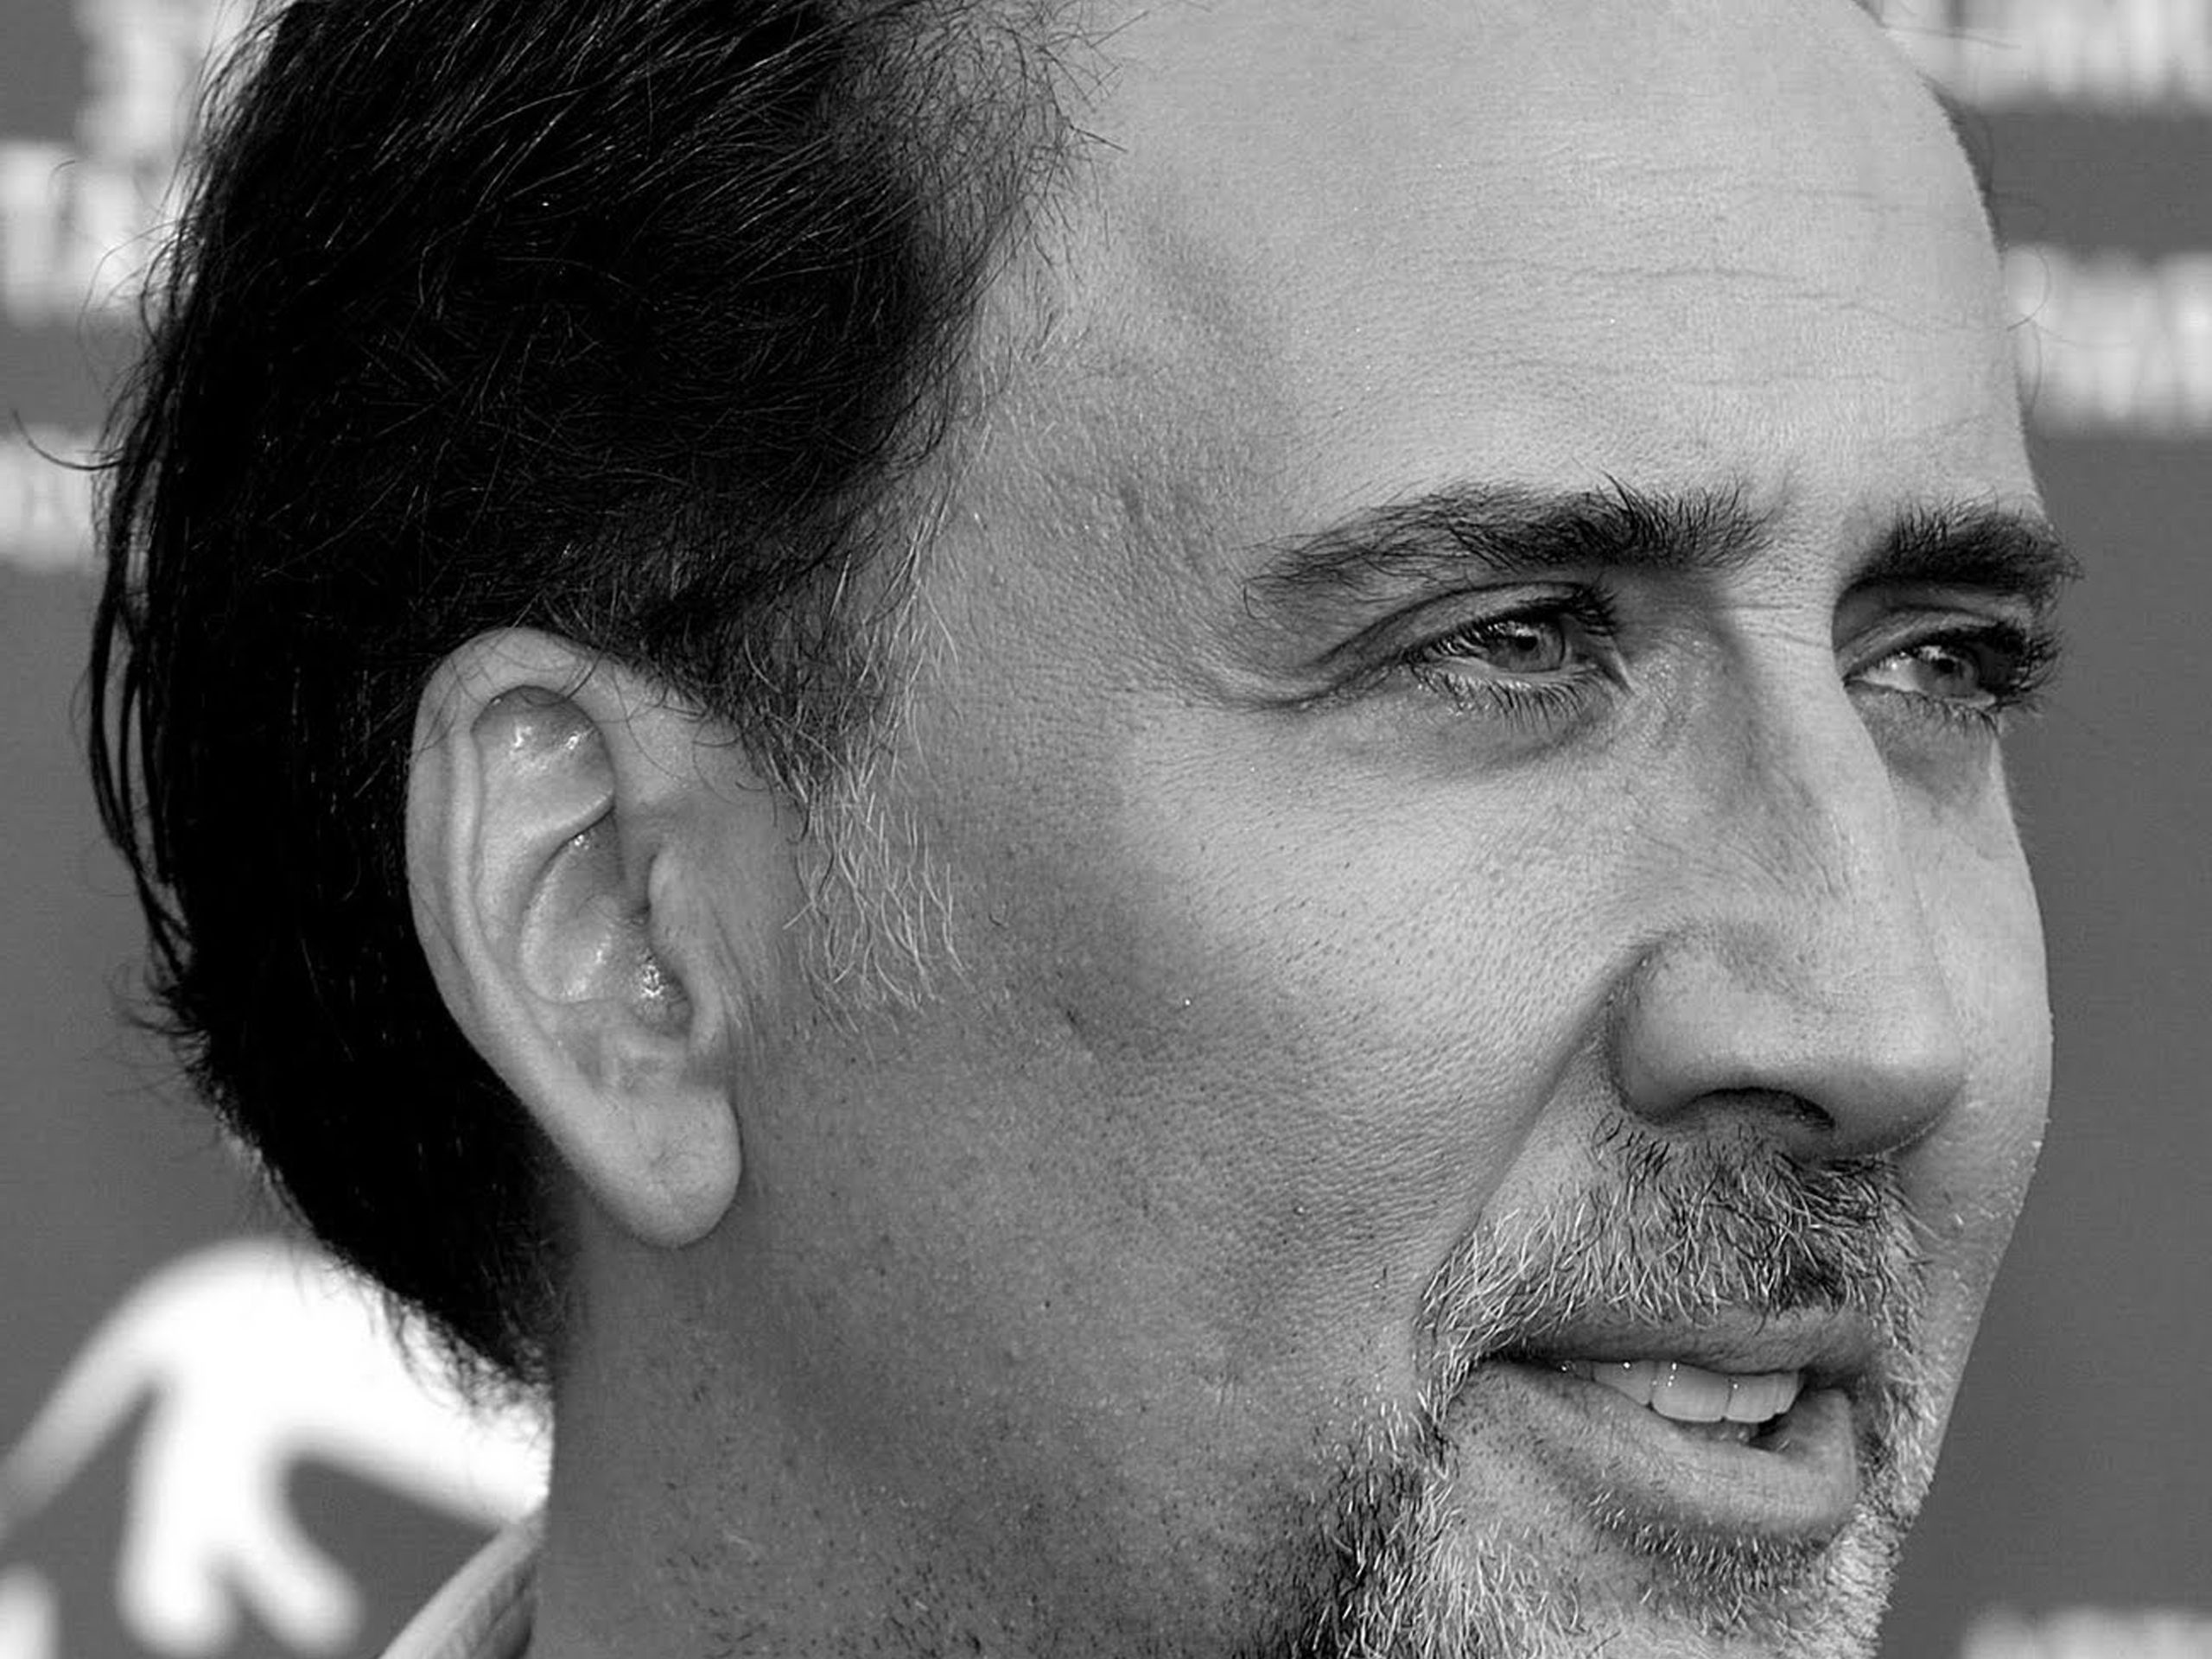 Nicolas-Cage-Wallpaper-HD-Widescreen.jpg